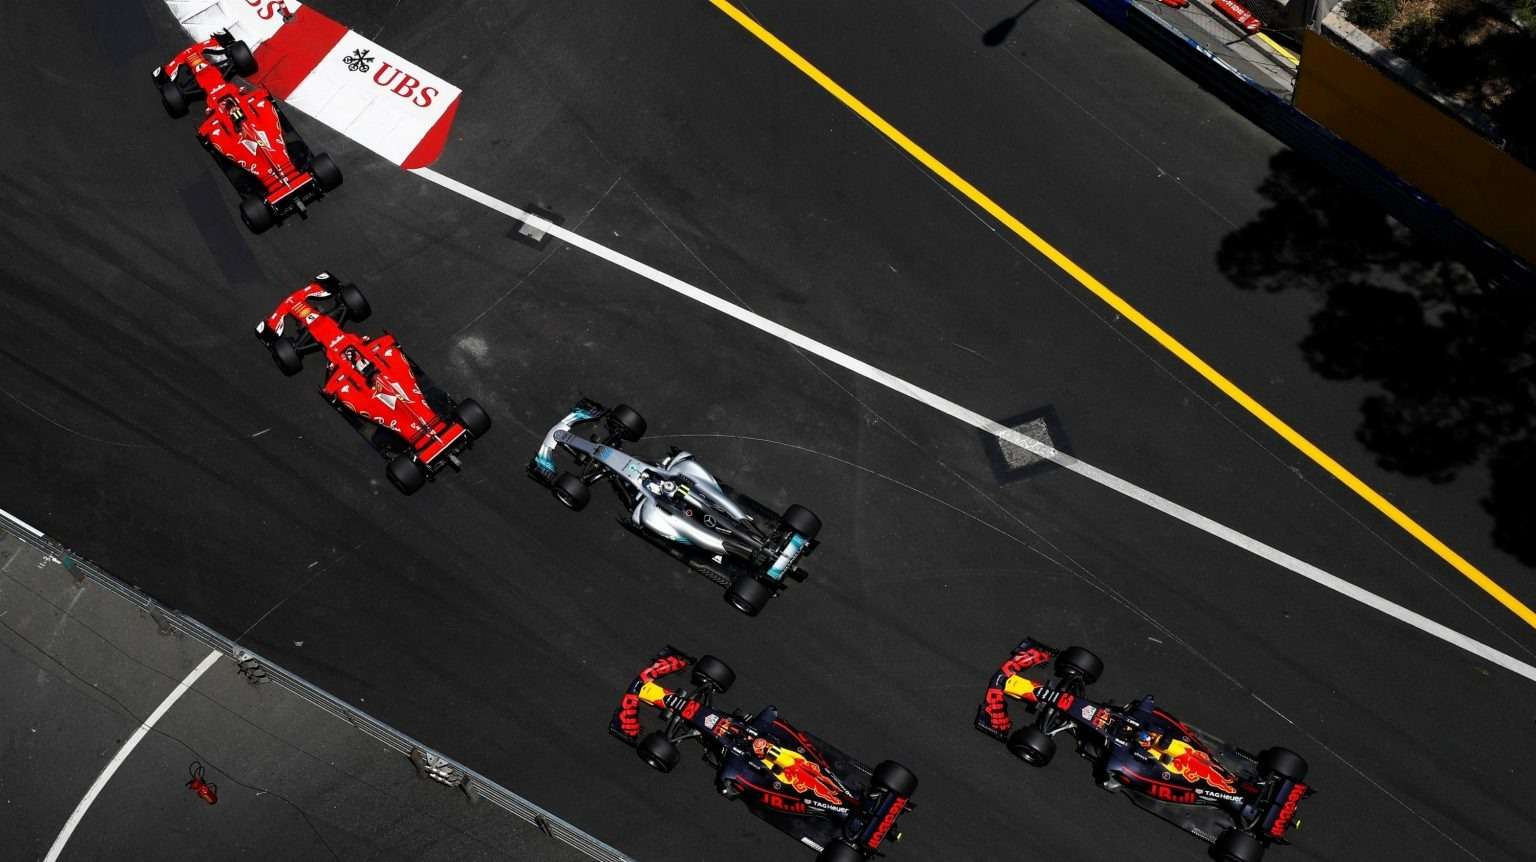 Старт Гран-при Монако 2017 года